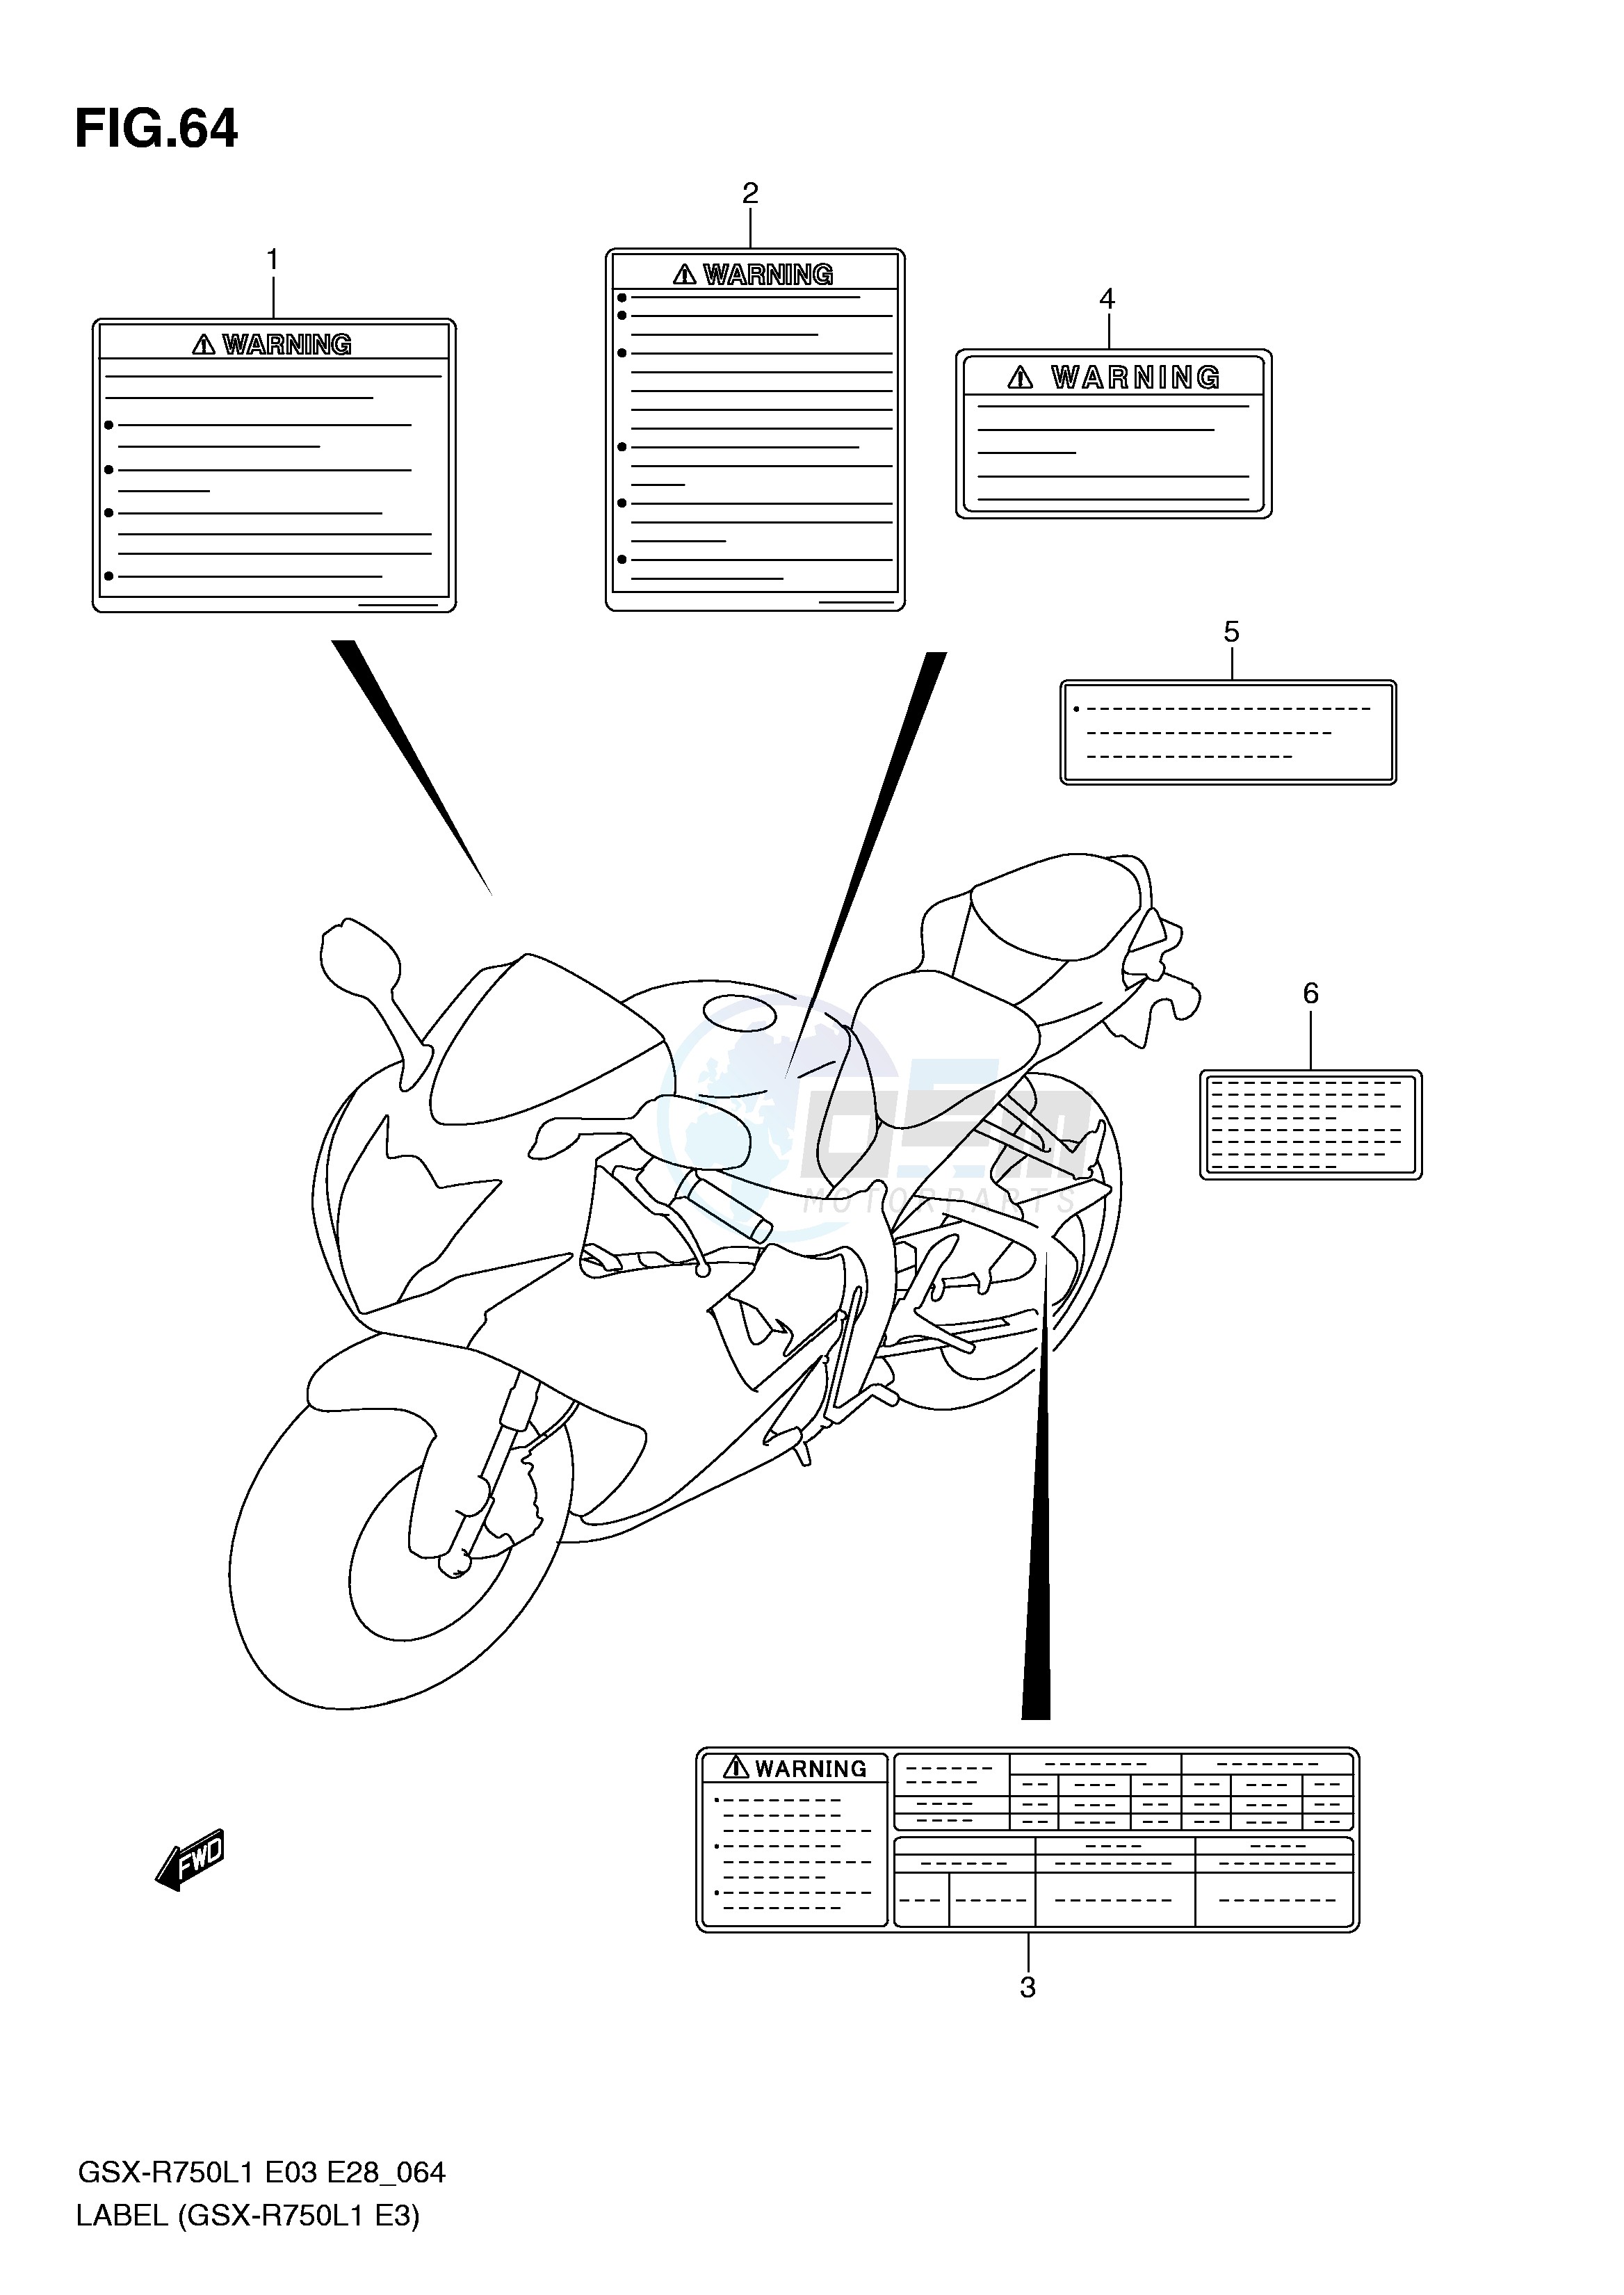 LABEL (GSX-R750L1 E3) blueprint